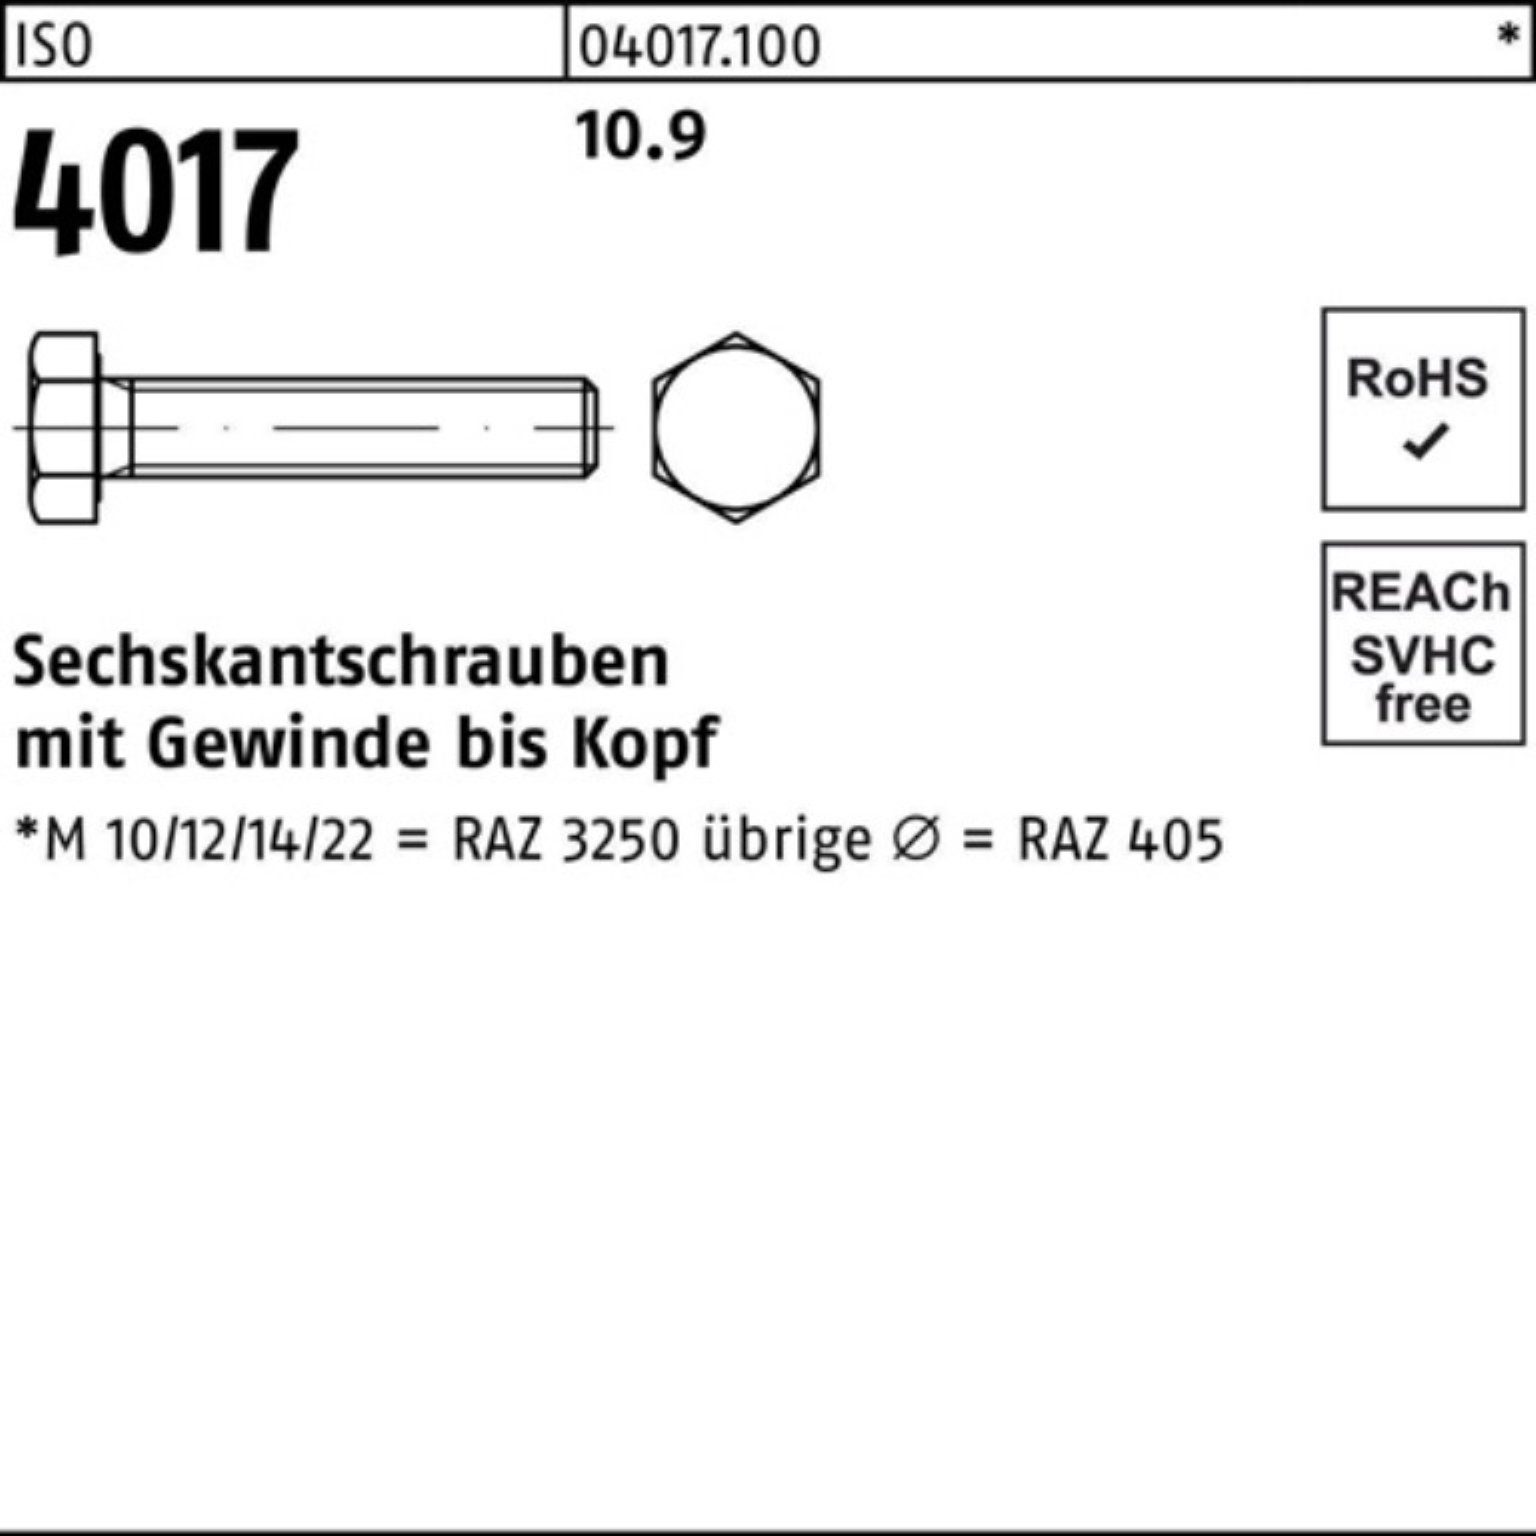 Sechskantschraube 4017 ISO 401 1 ISO Bufab M30x Stück 10.9 55 Sechskantschraube 100er Pack VG